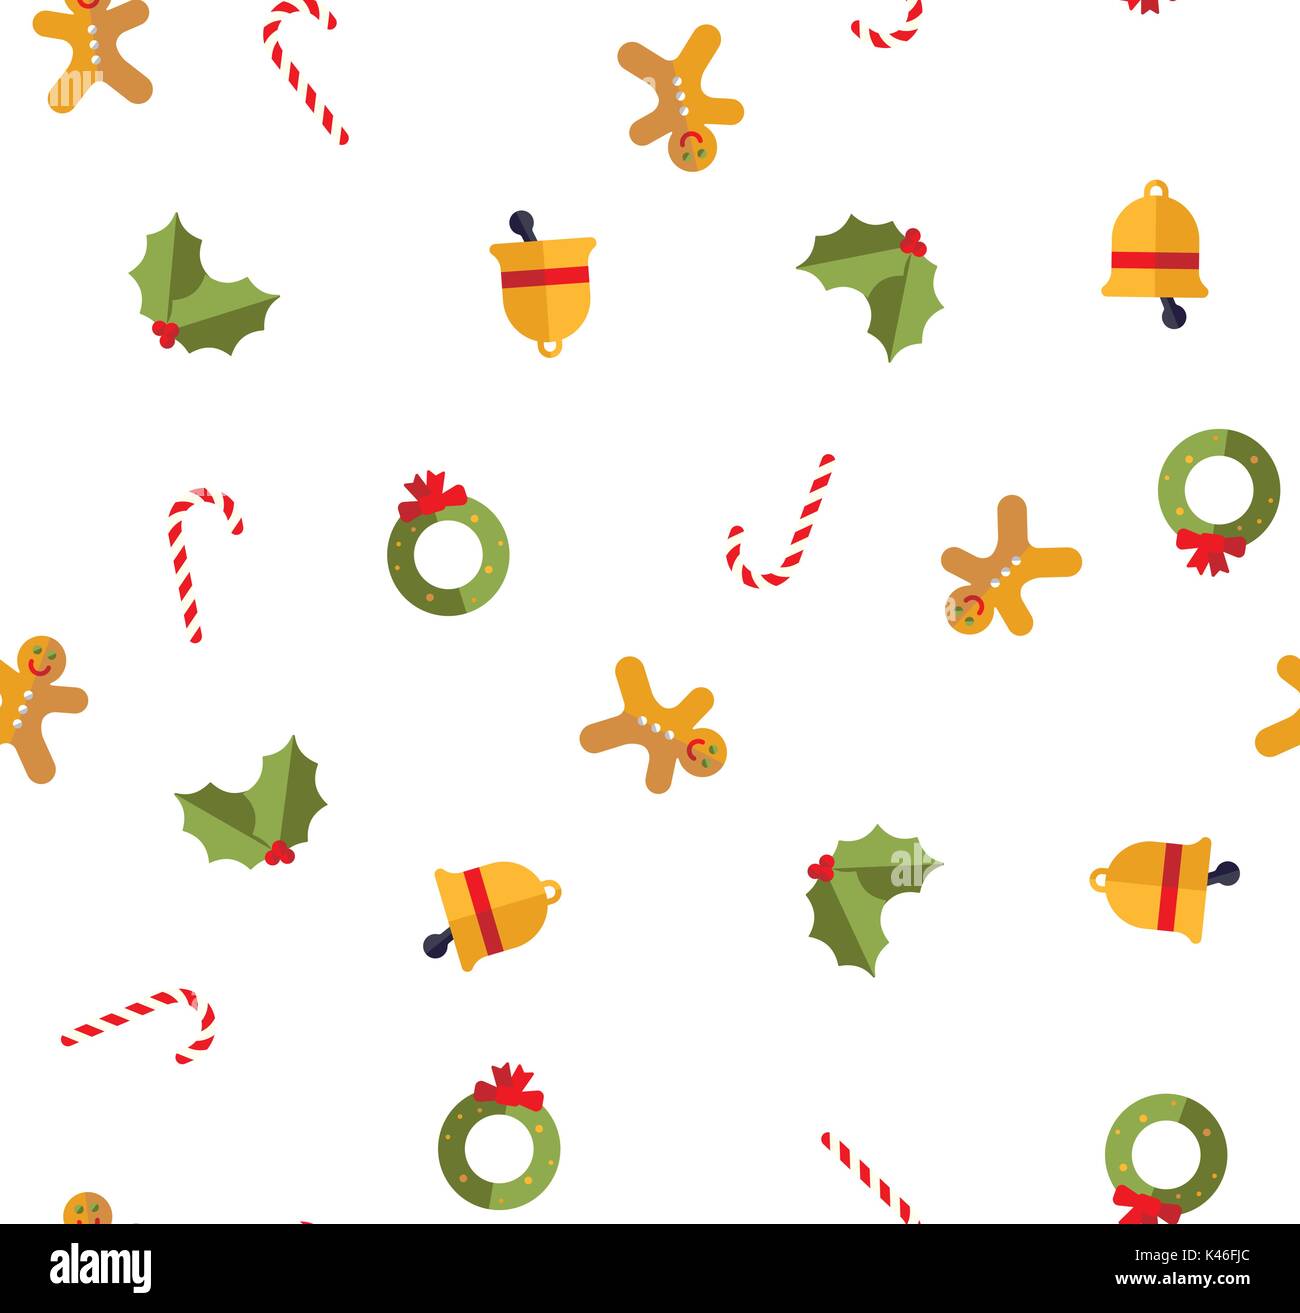 Weihnachten nahtlose Muster mit Zuckerstange, Gingerbread Man, Holly verlässt, christmas bell und Kranz mit Schleife Stock Vektor